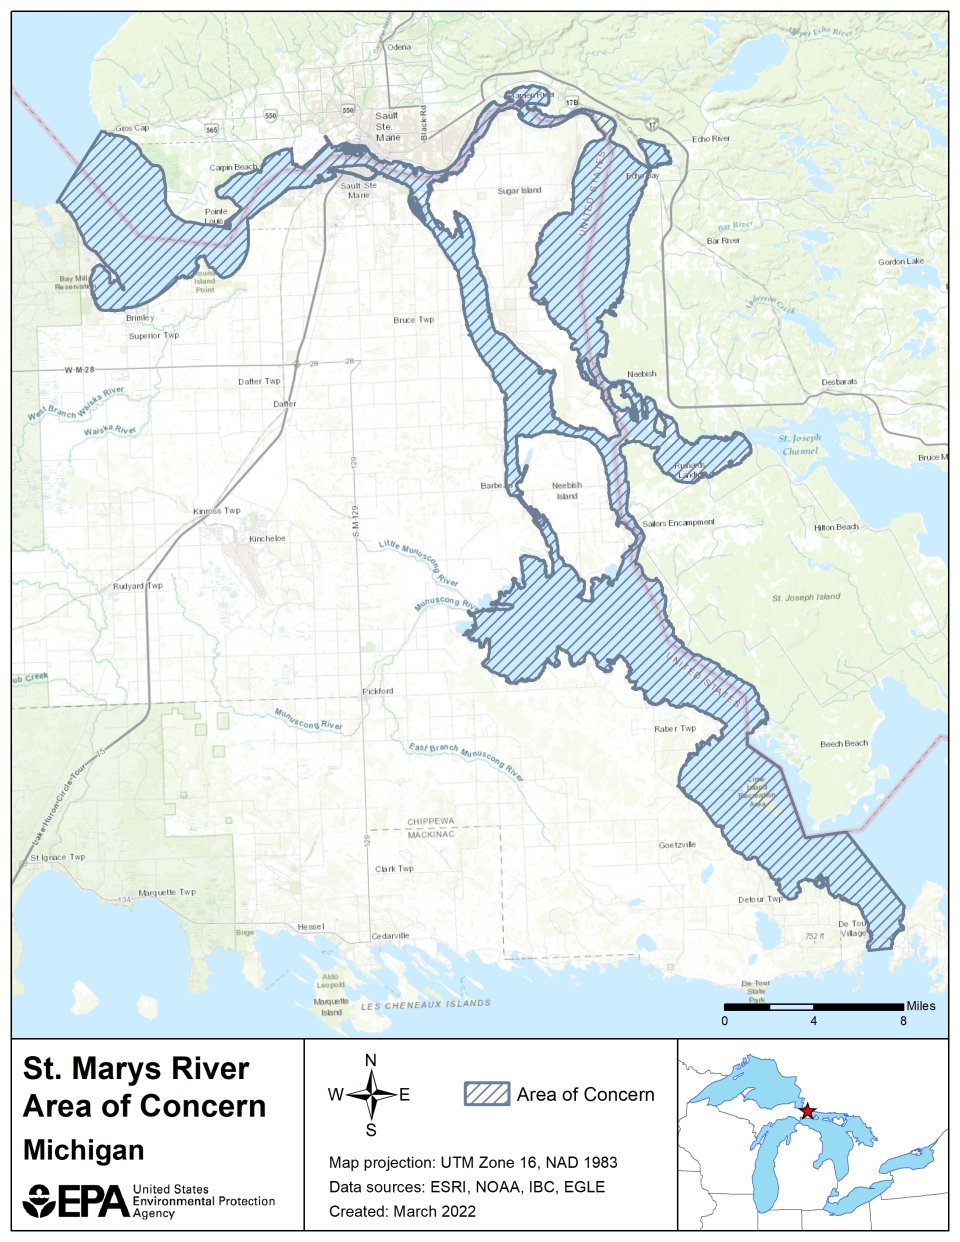 St. Marys River AOC Boundary Map